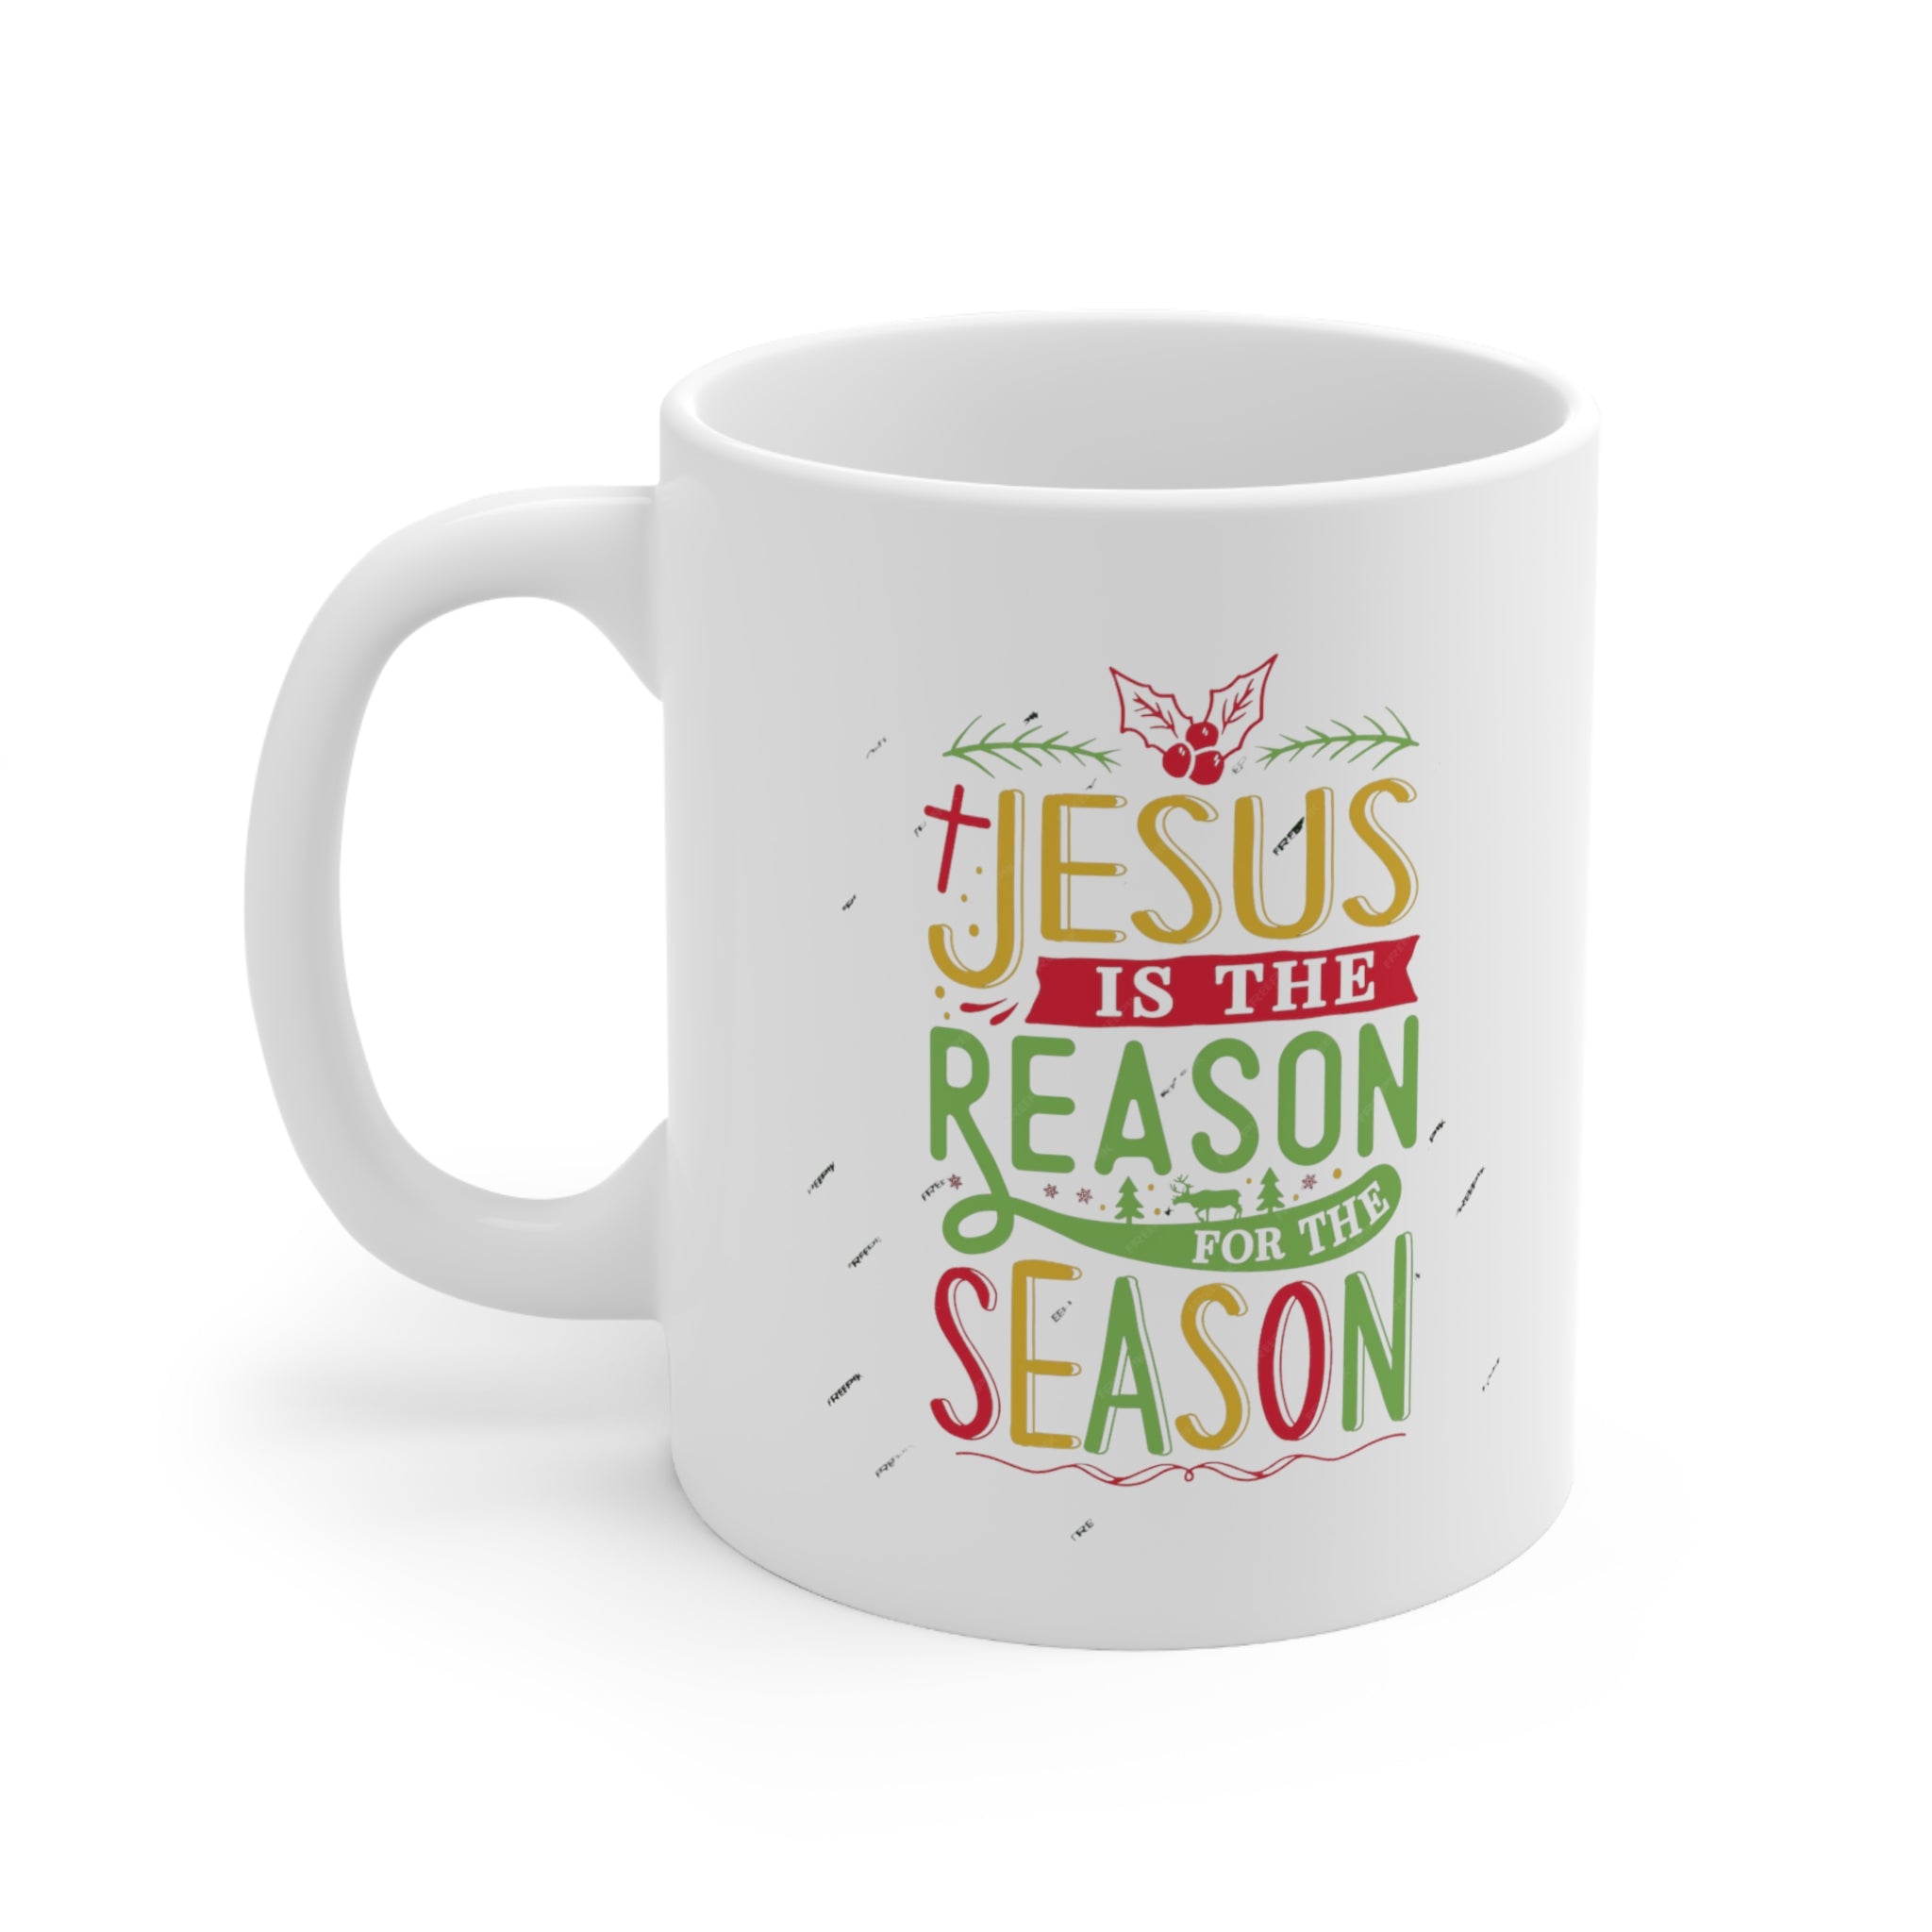 "Jesus is the reason" Ceramic Mug 11oz